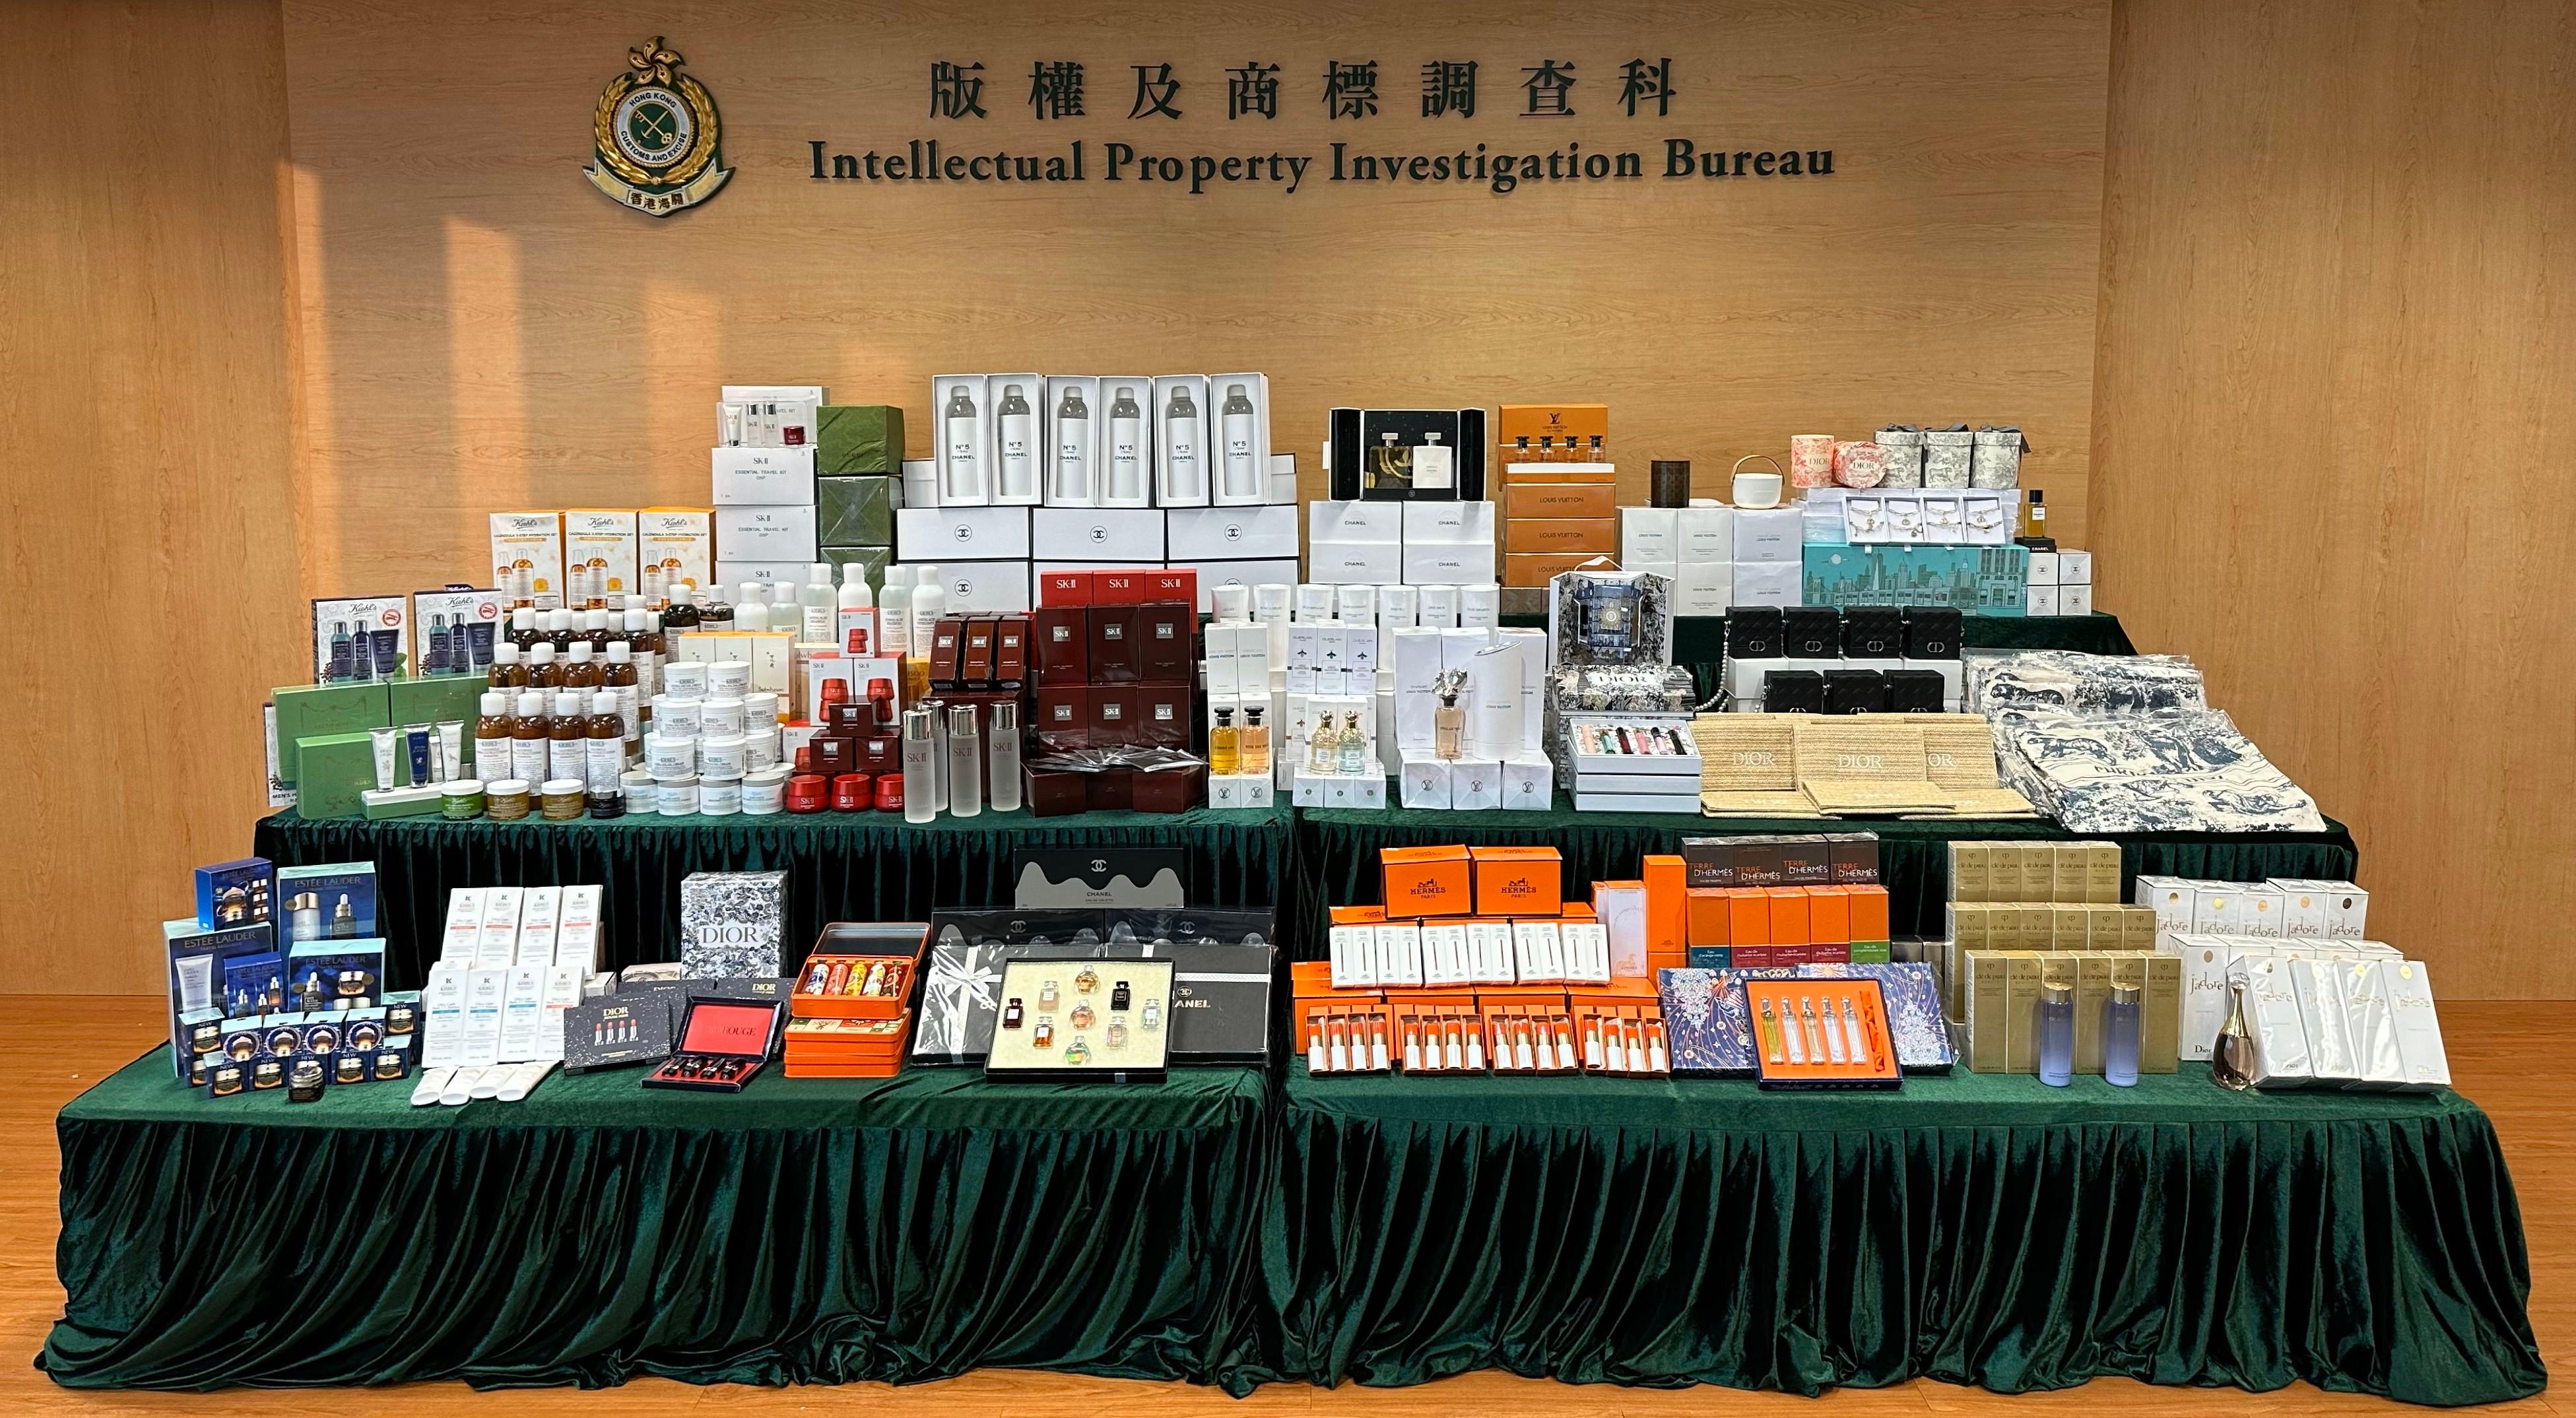 香港海關昨日（八月十七日）展開特別執法行動，打擊網上售賣冒牌香水和化妝護膚品的侵權活動。經初步點算，涉案的懷疑冒牌物品約有三千件，估計市值約一百三十萬元。圖示檢獲的部分懷疑冒牌物品。   


